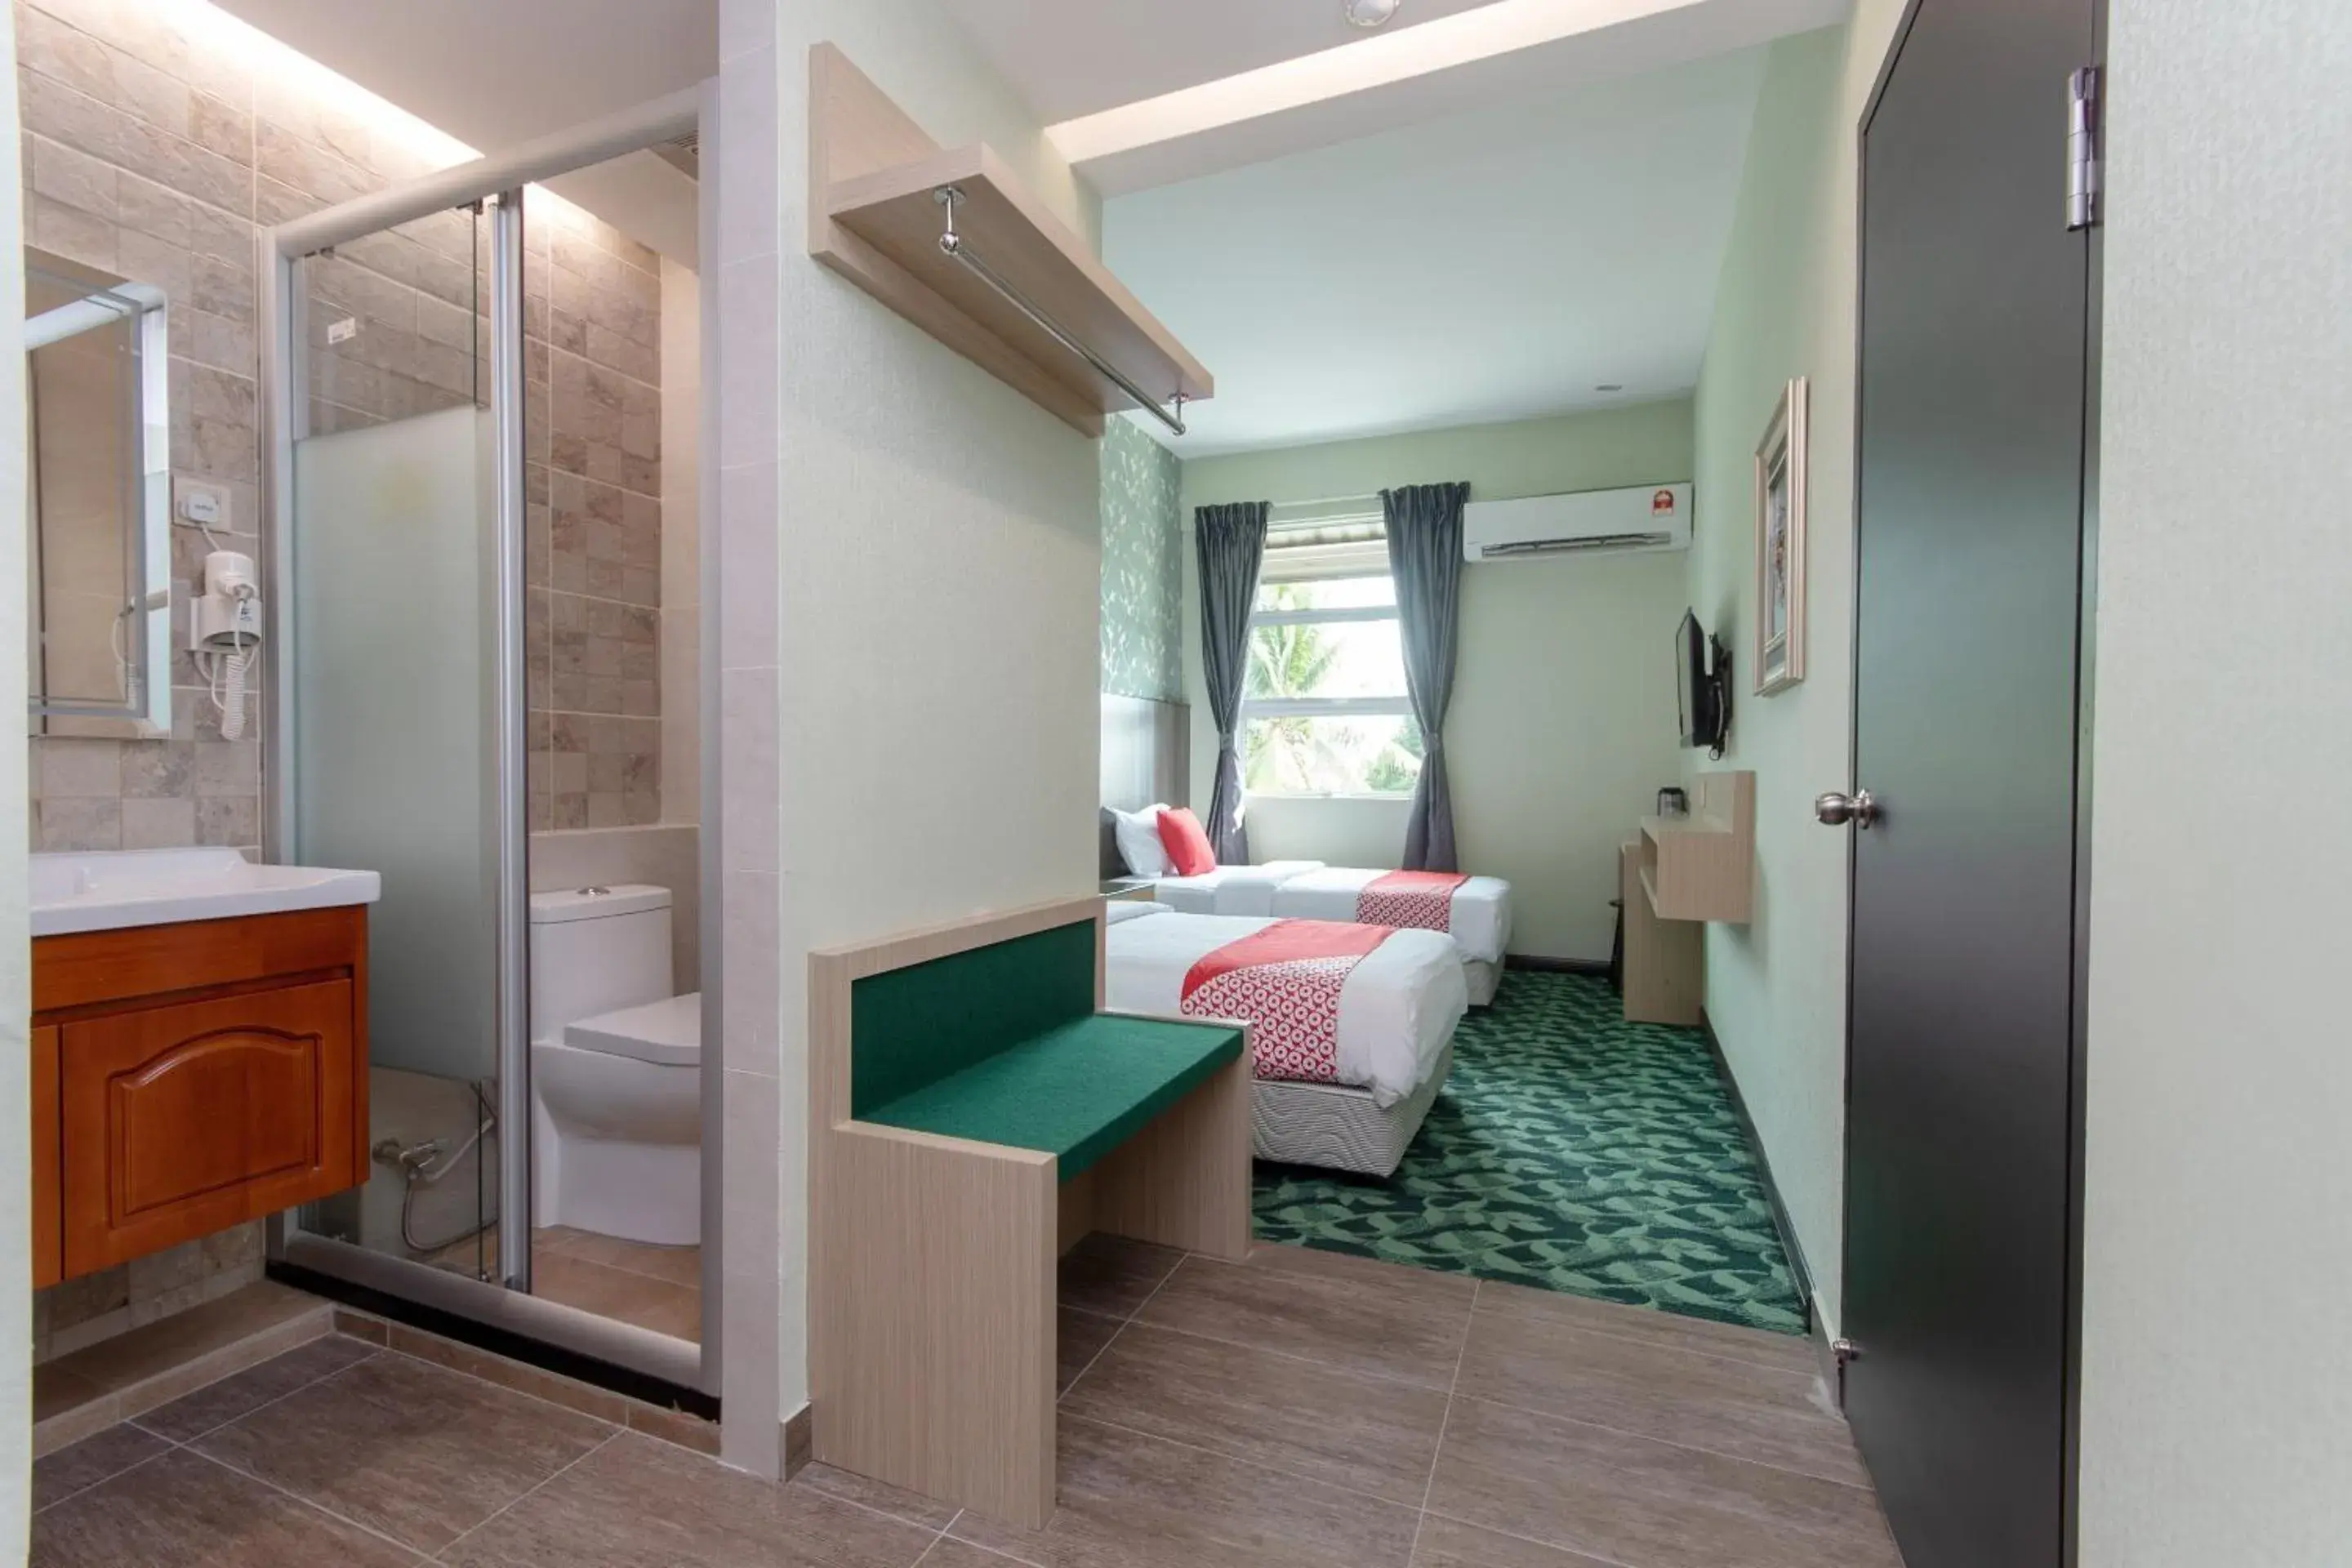 Bedroom, Bathroom in OYO 89375 Regent Hotel